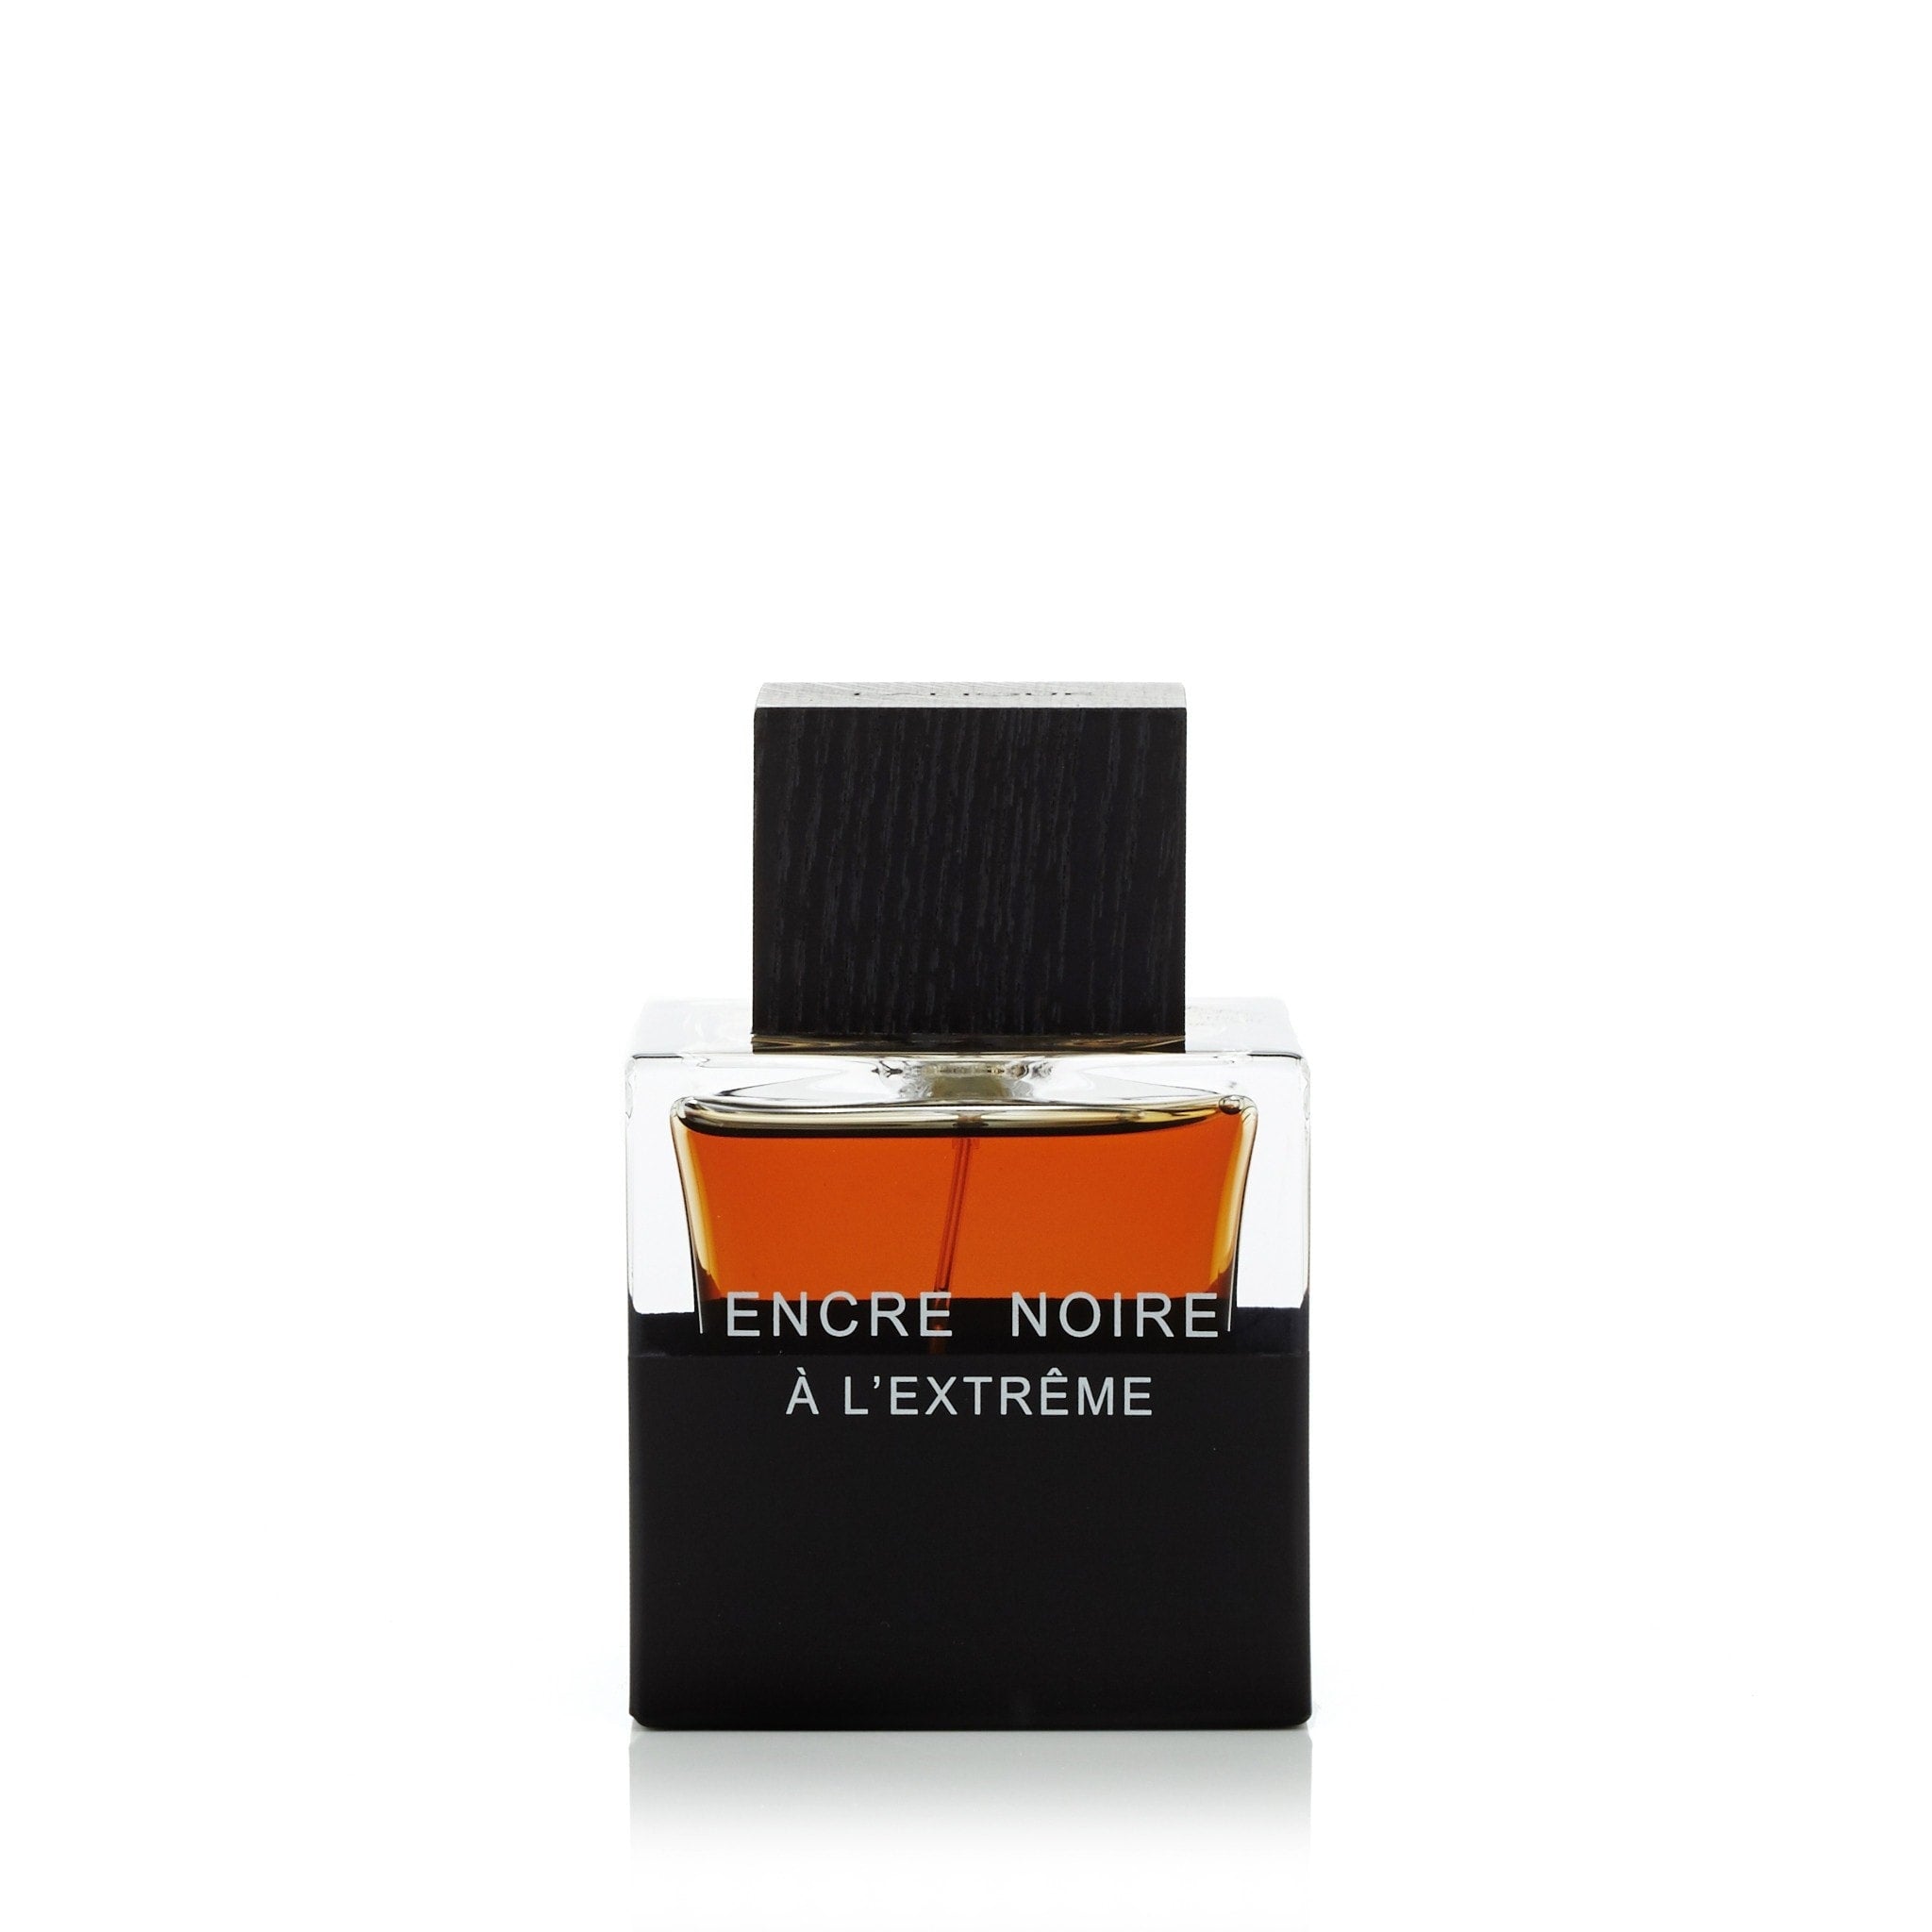 Encre Noire Eau de Toilette Spray by Lalique - 1.7 oz